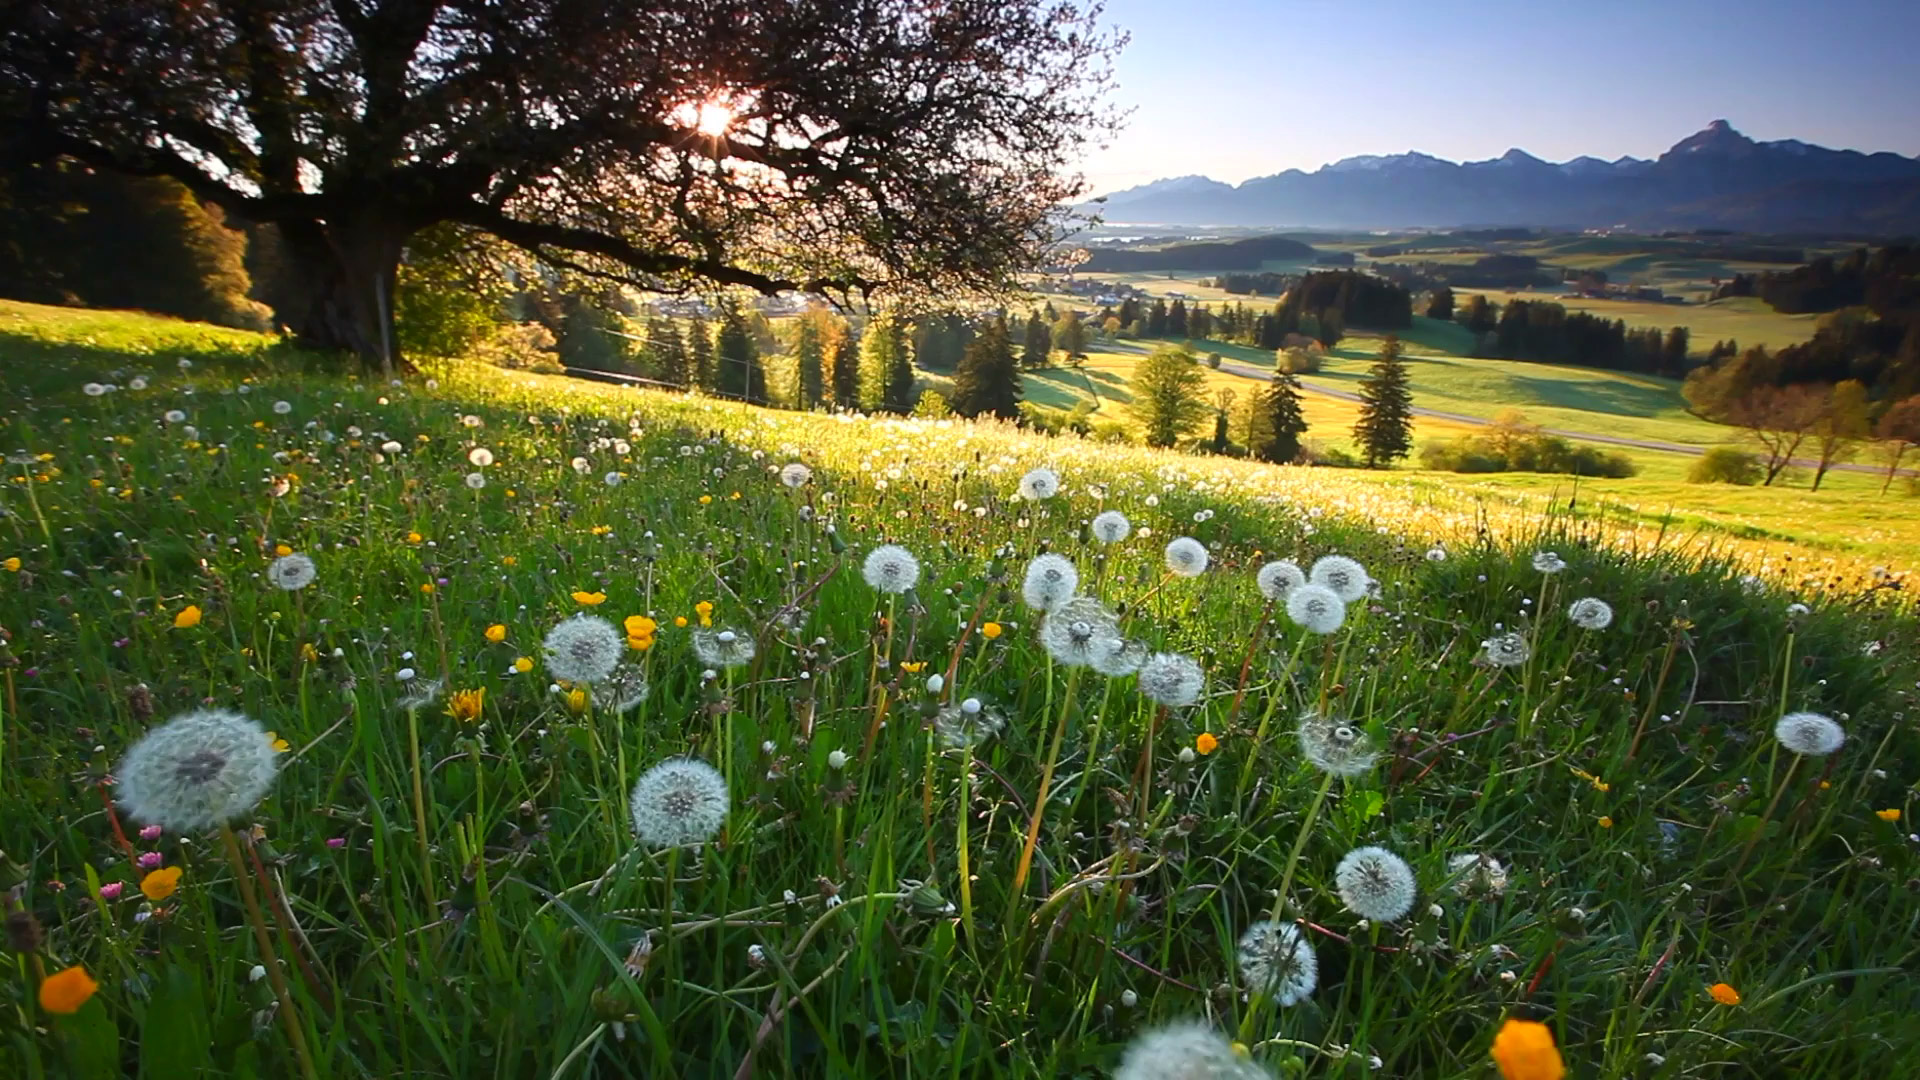 Nachhaltig gärtnern. Unsere bayerischen Gärtnereien produzieren Kräuter, Stauden und Gartenpflanzen bienenfreundlich, nachhaltig und umweltfreundlich